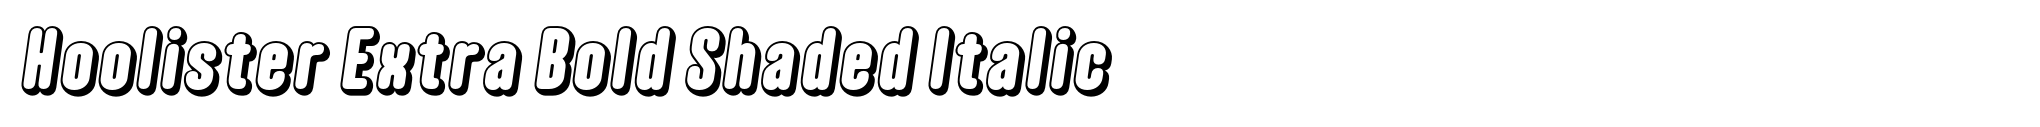 Hoolister Extra Bold Shaded Italic image